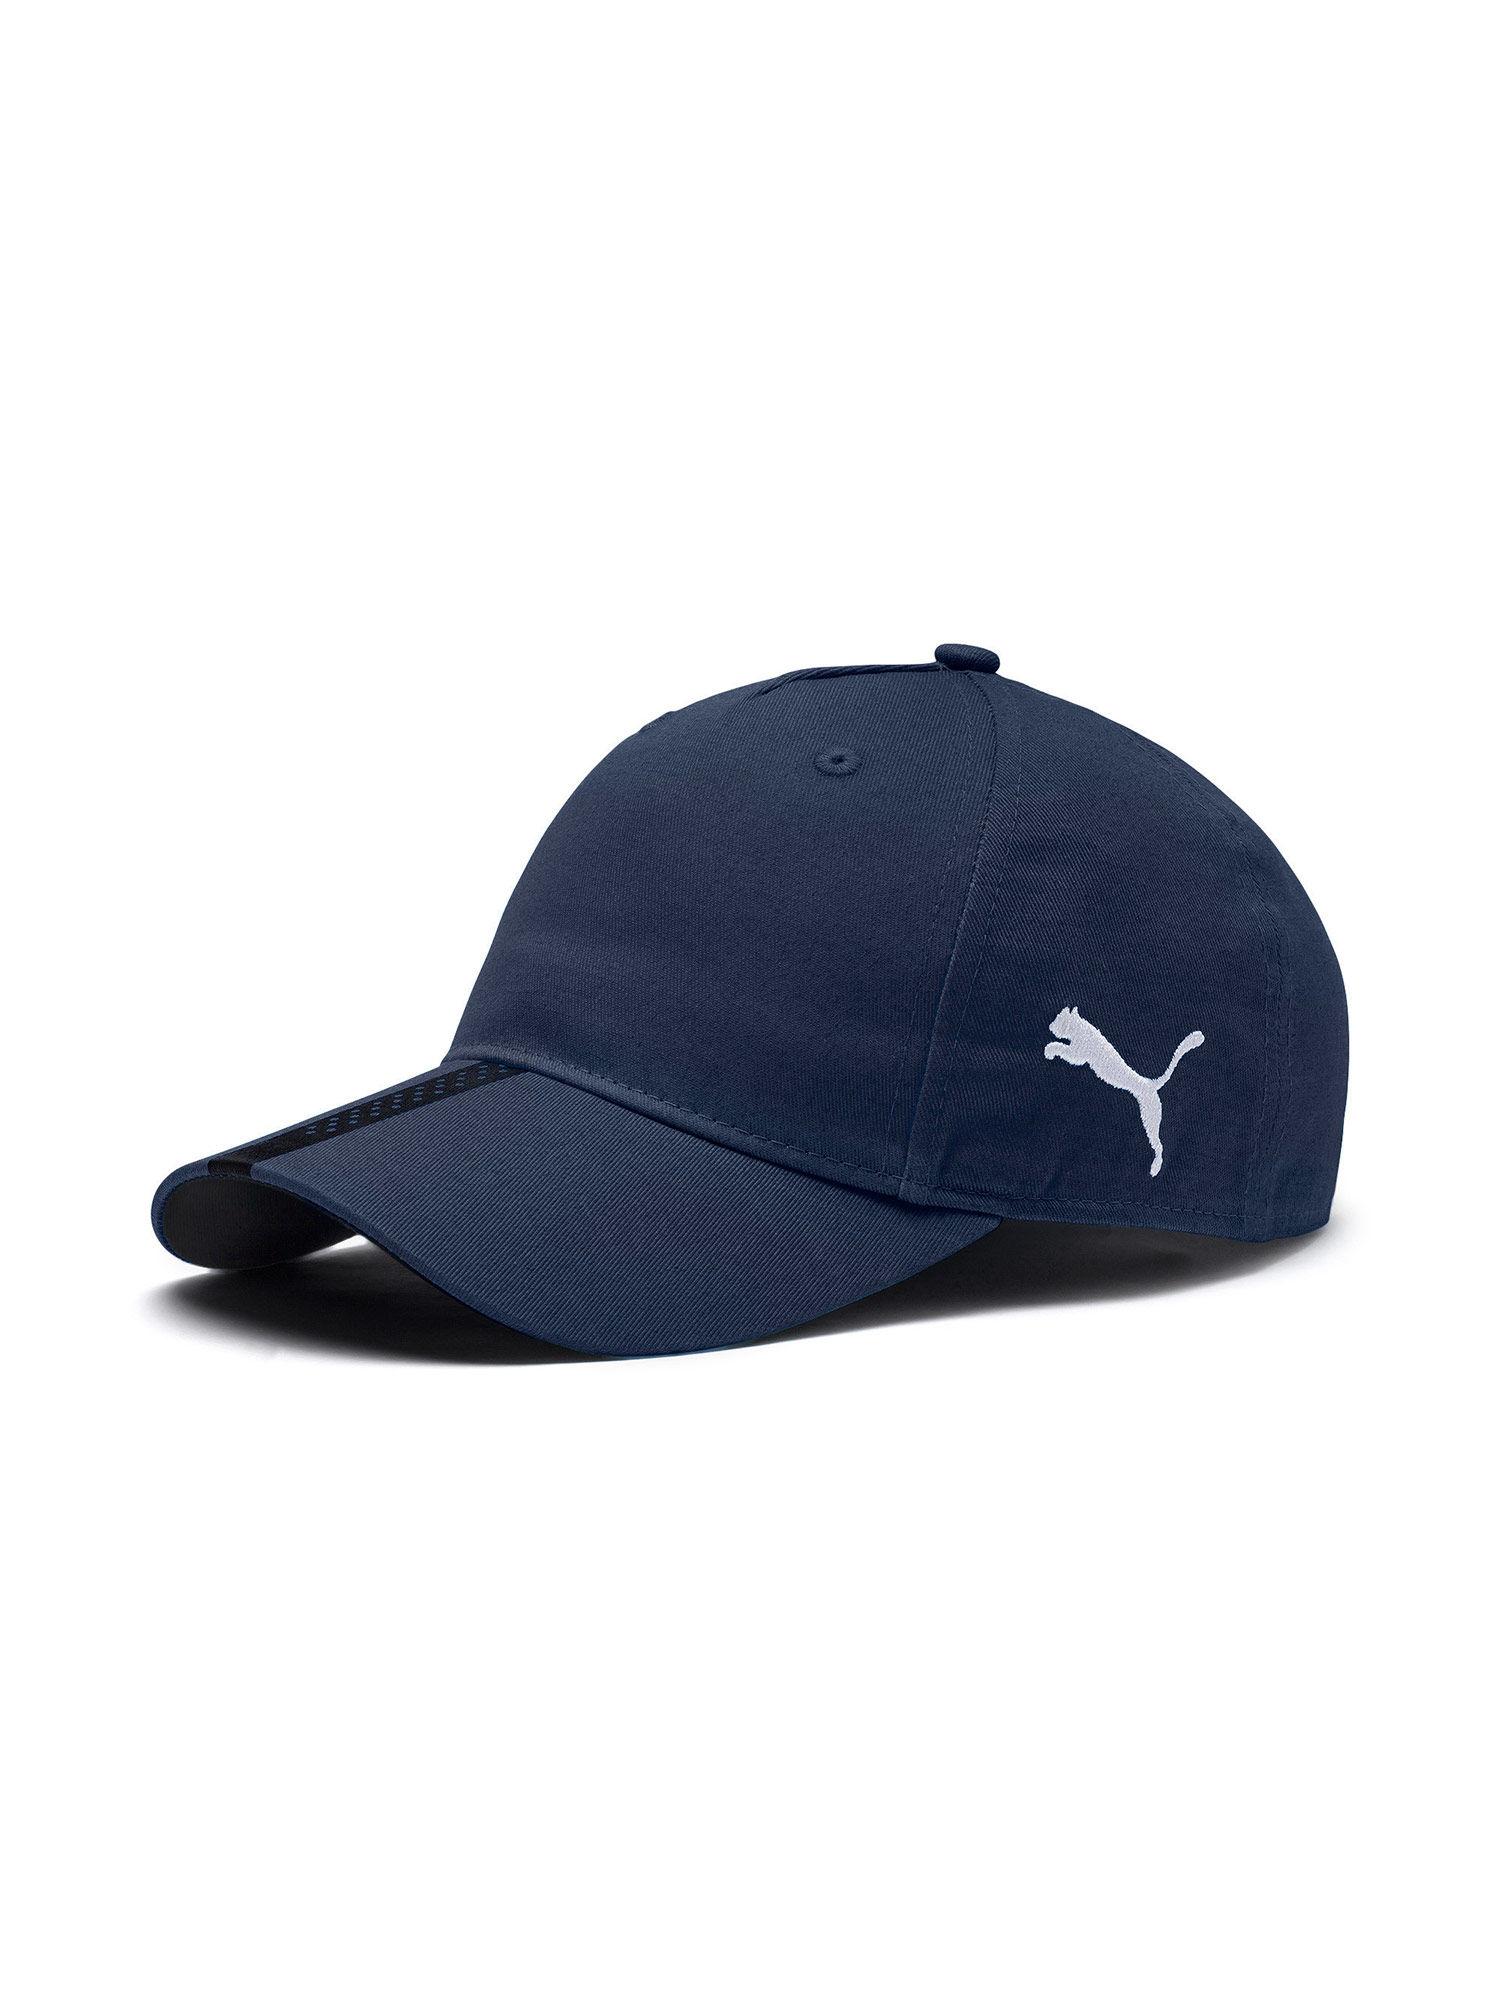 liga unisex blue cap